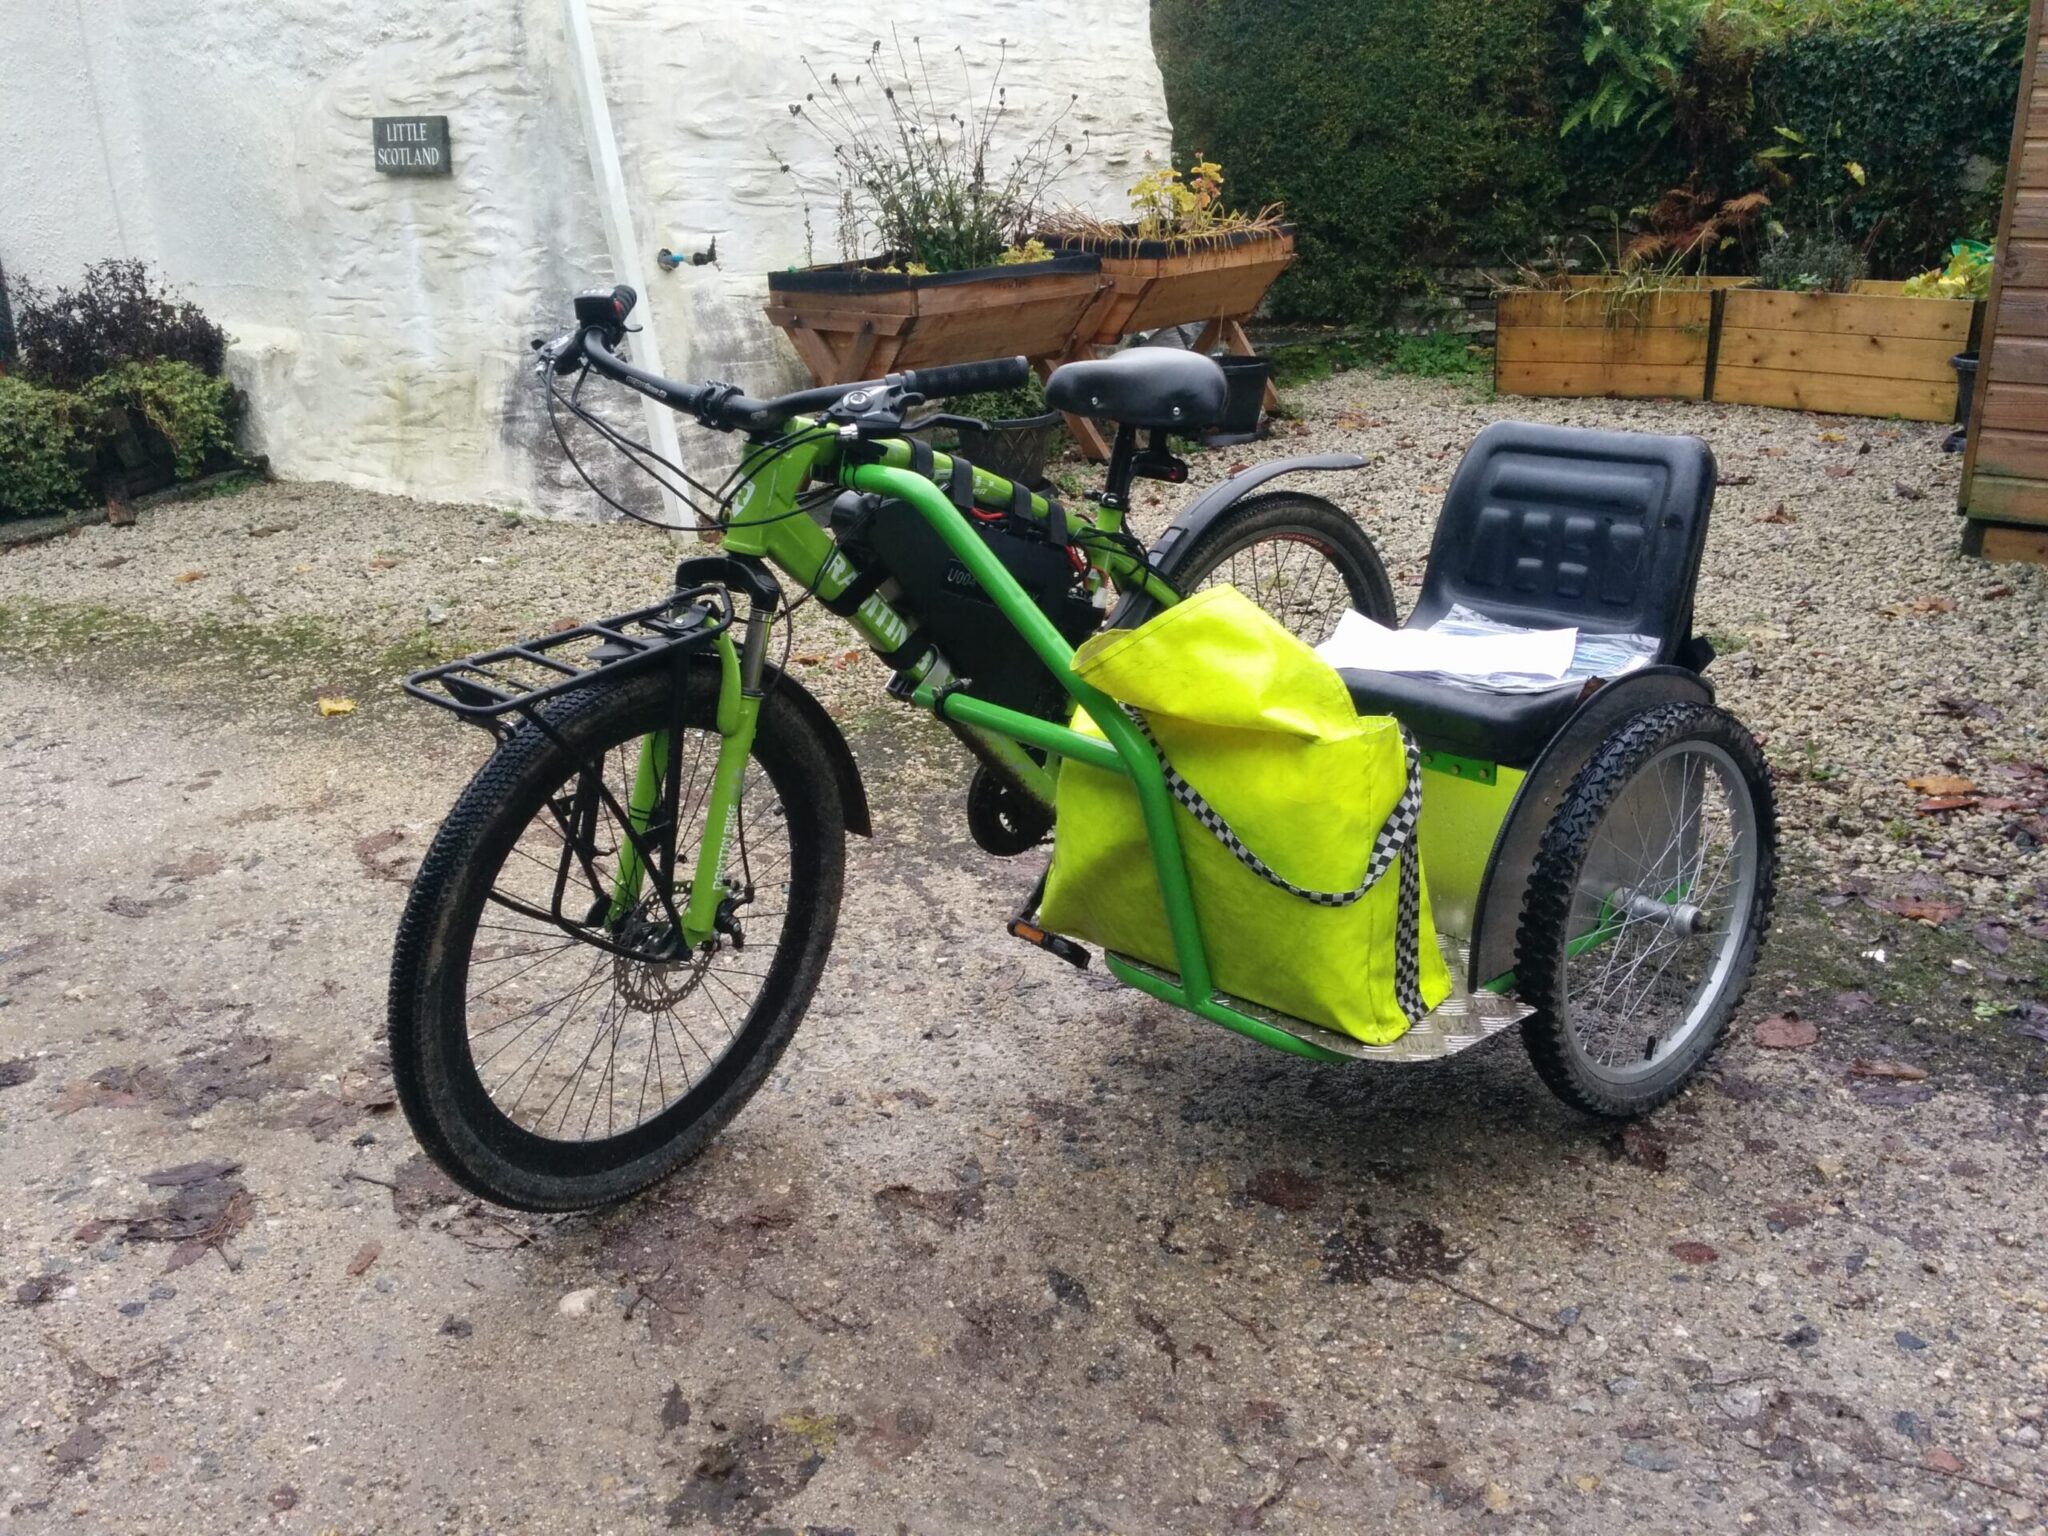 The green bike has a sidecar